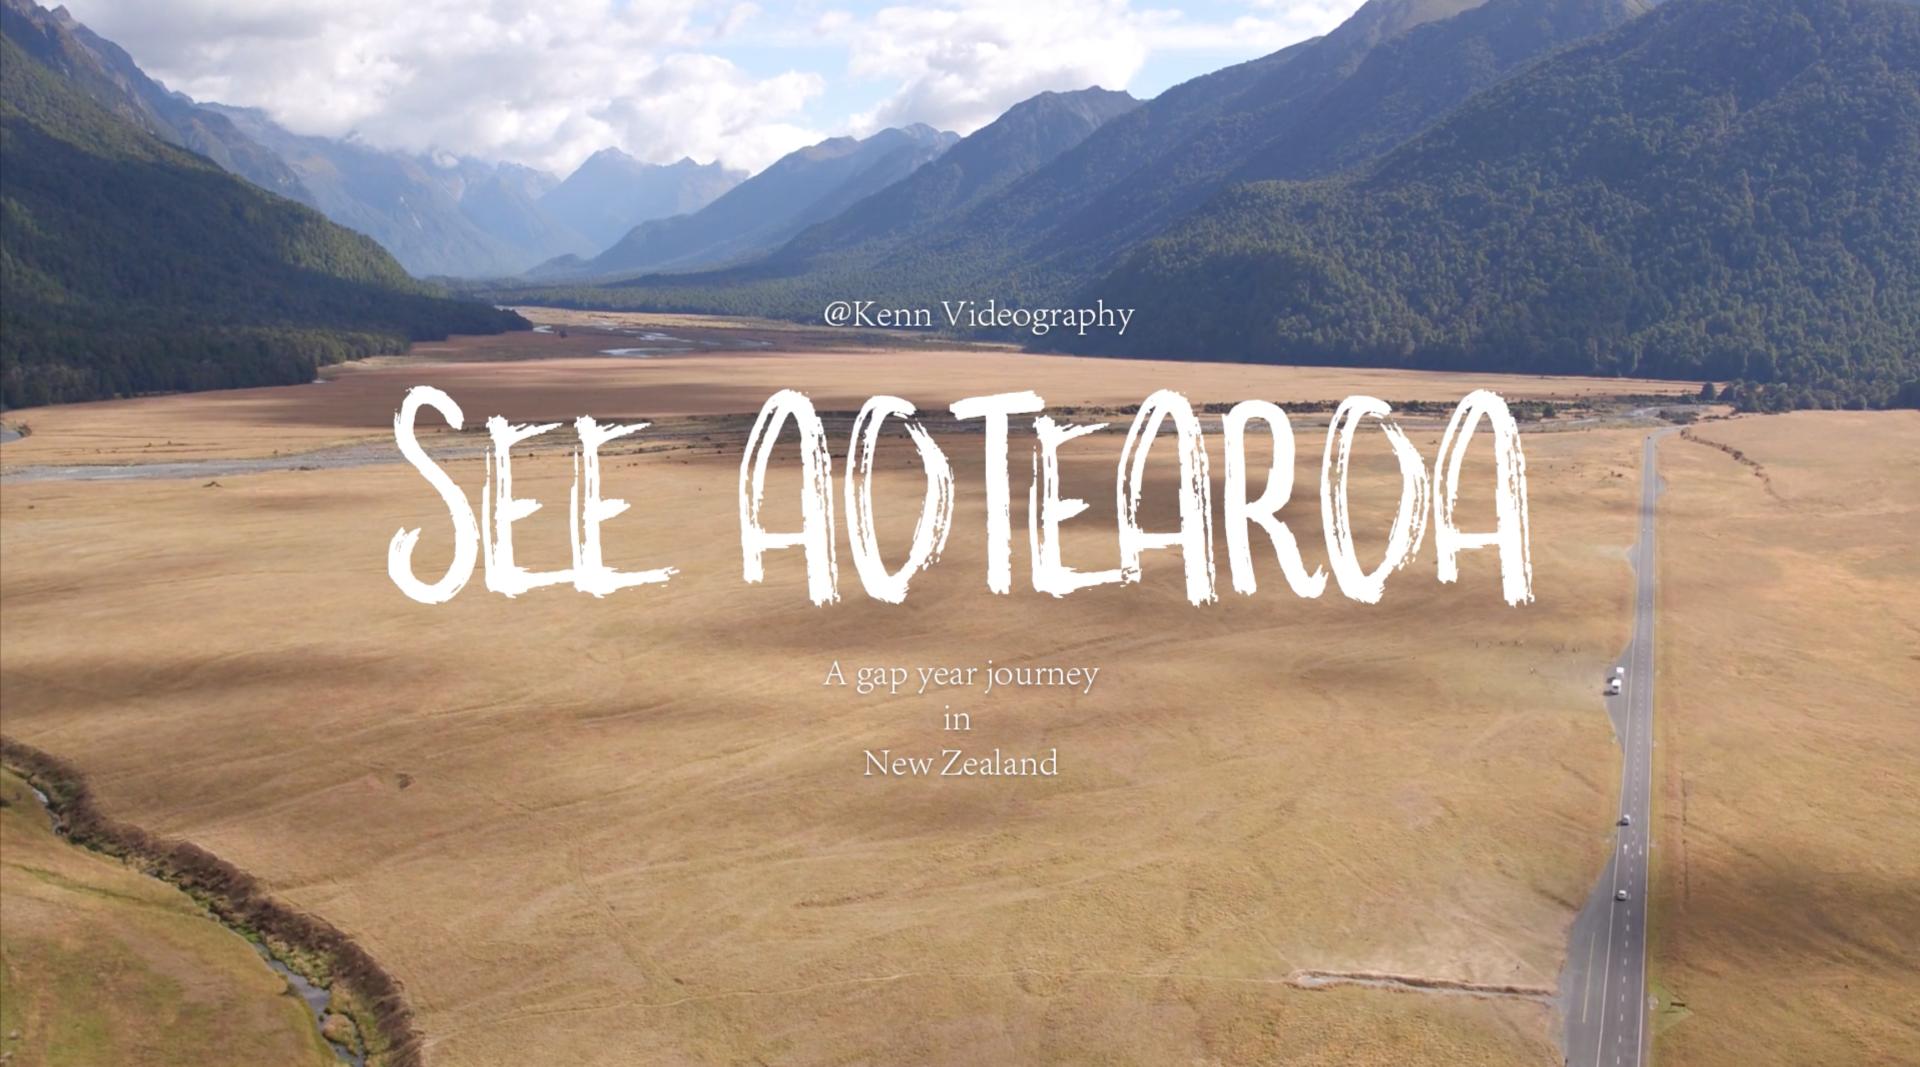 海风映像 | 新西兰间隔年旅行记录《See Aotearoa》